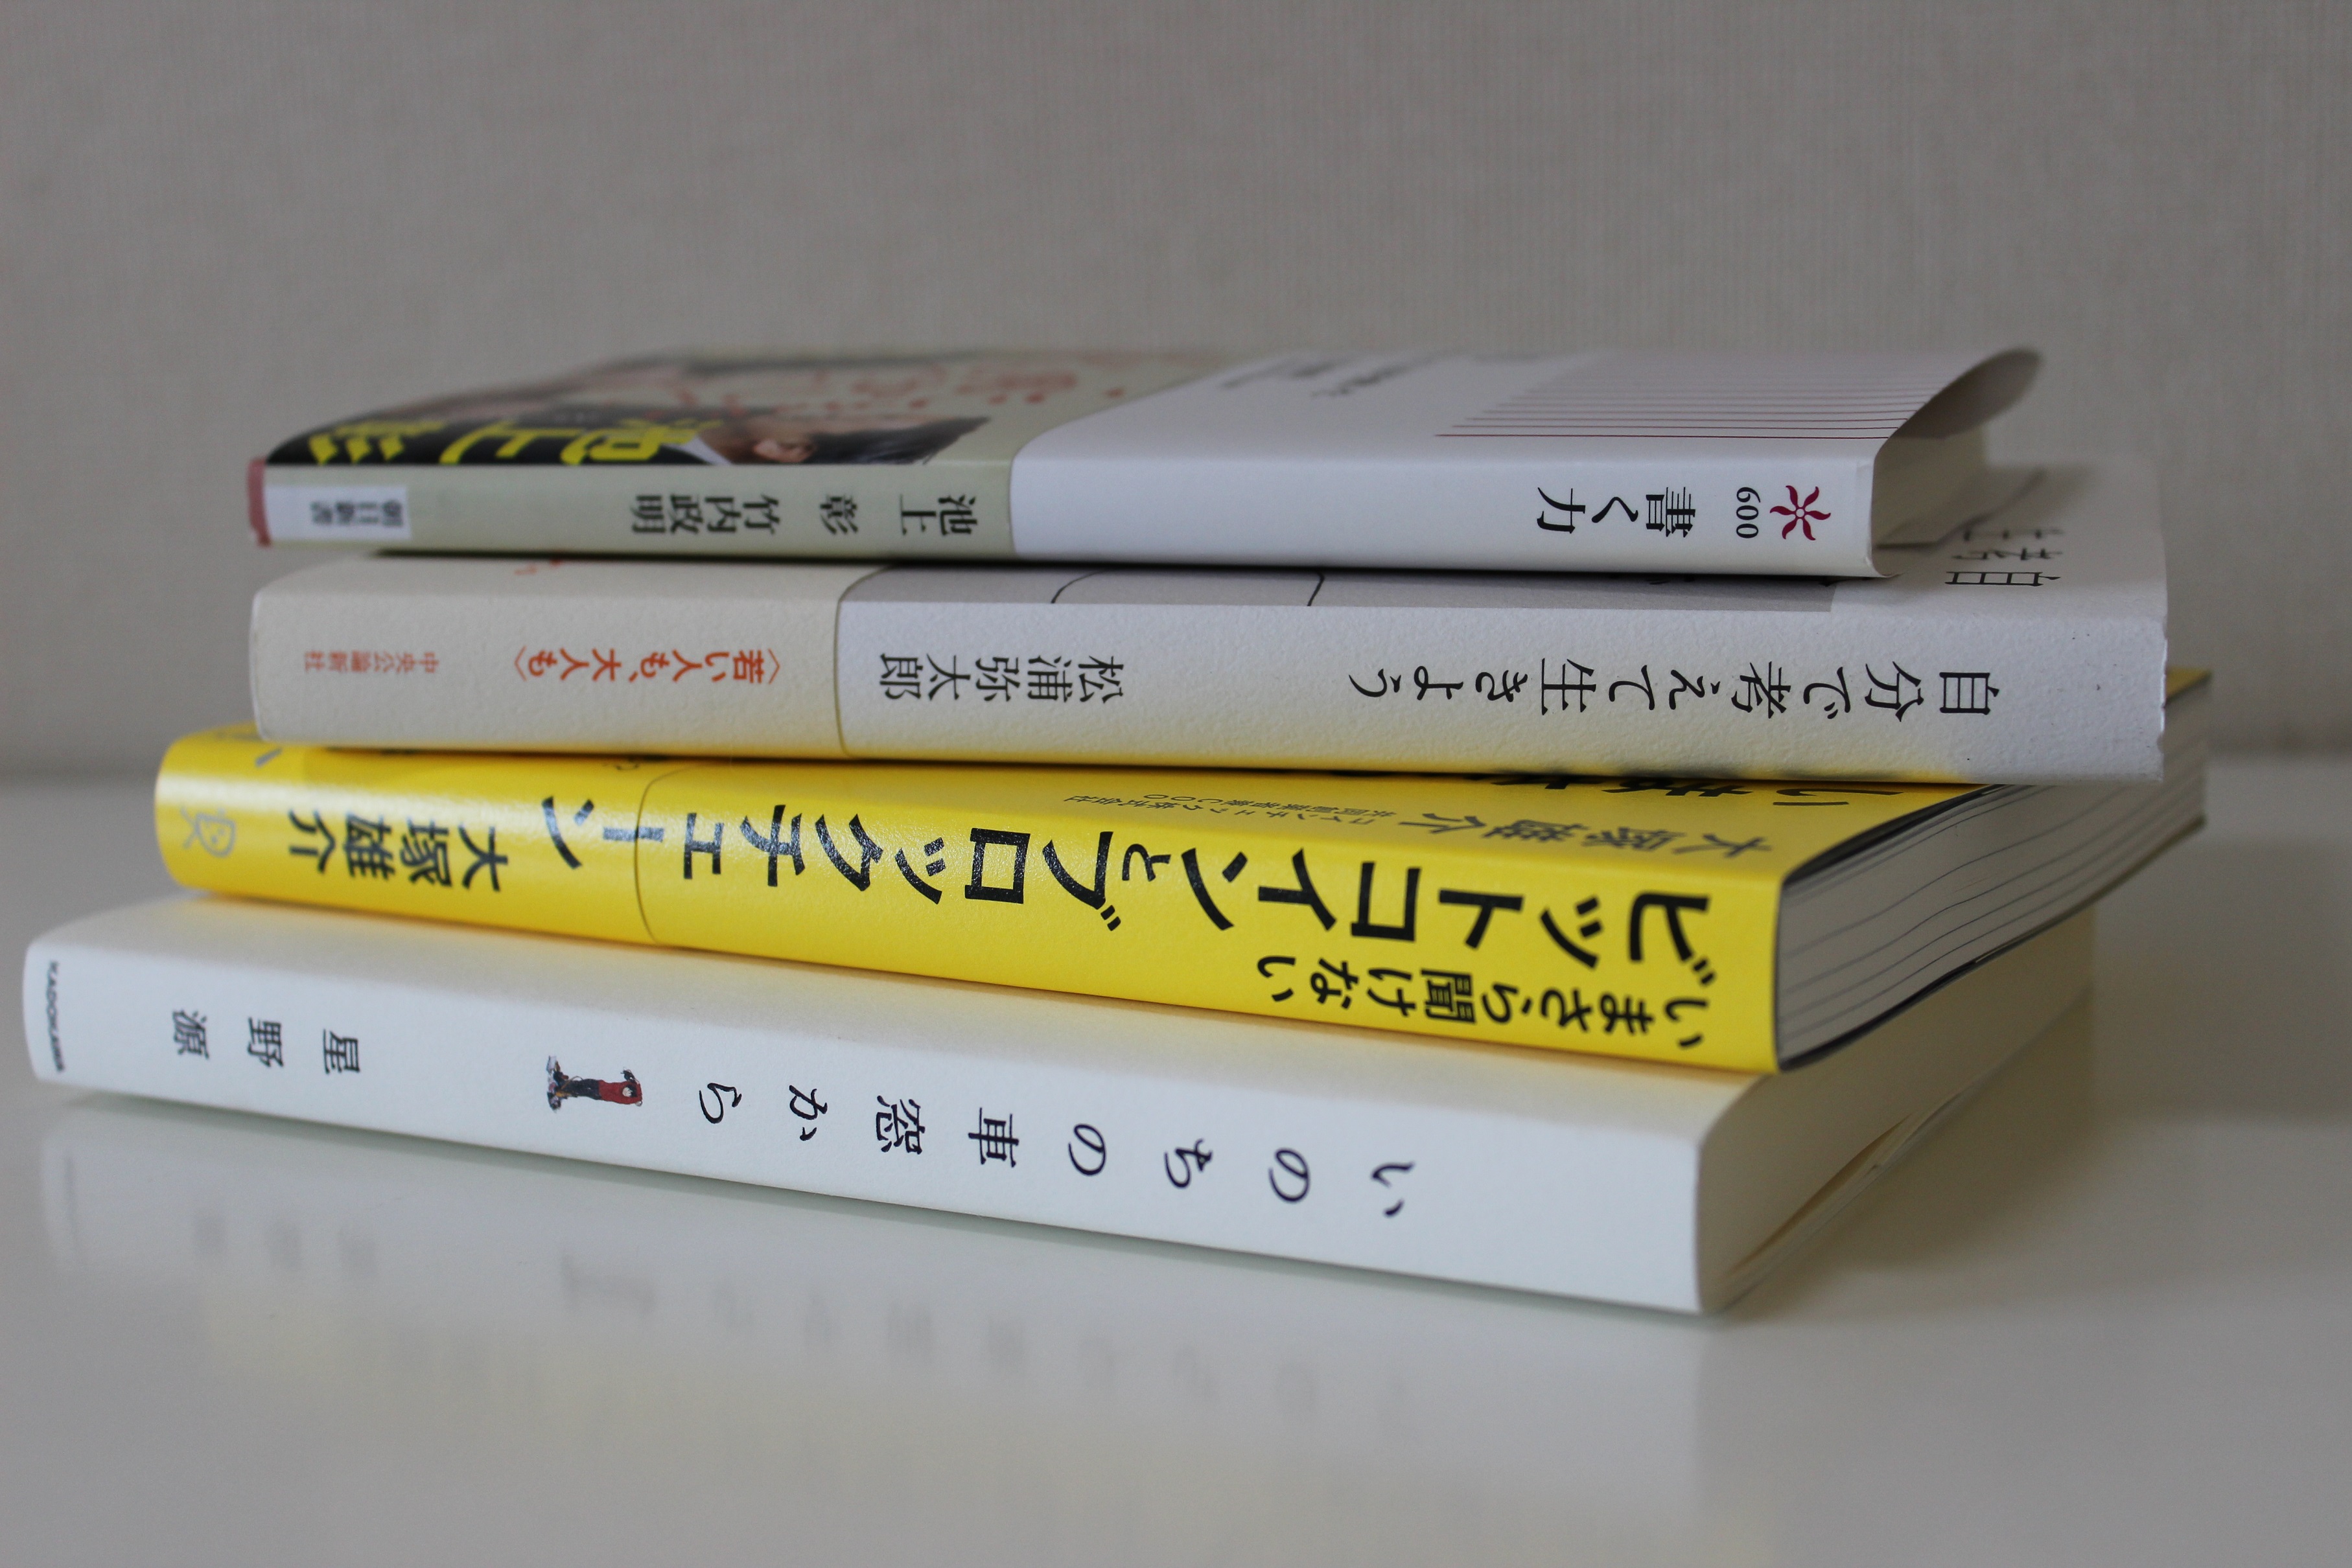 本を読む人 になりたければ 読みたい本を読めばok 本を読んでいる人は読みたい本を読んでいる 税理士 野田翔一 シゴトブログ